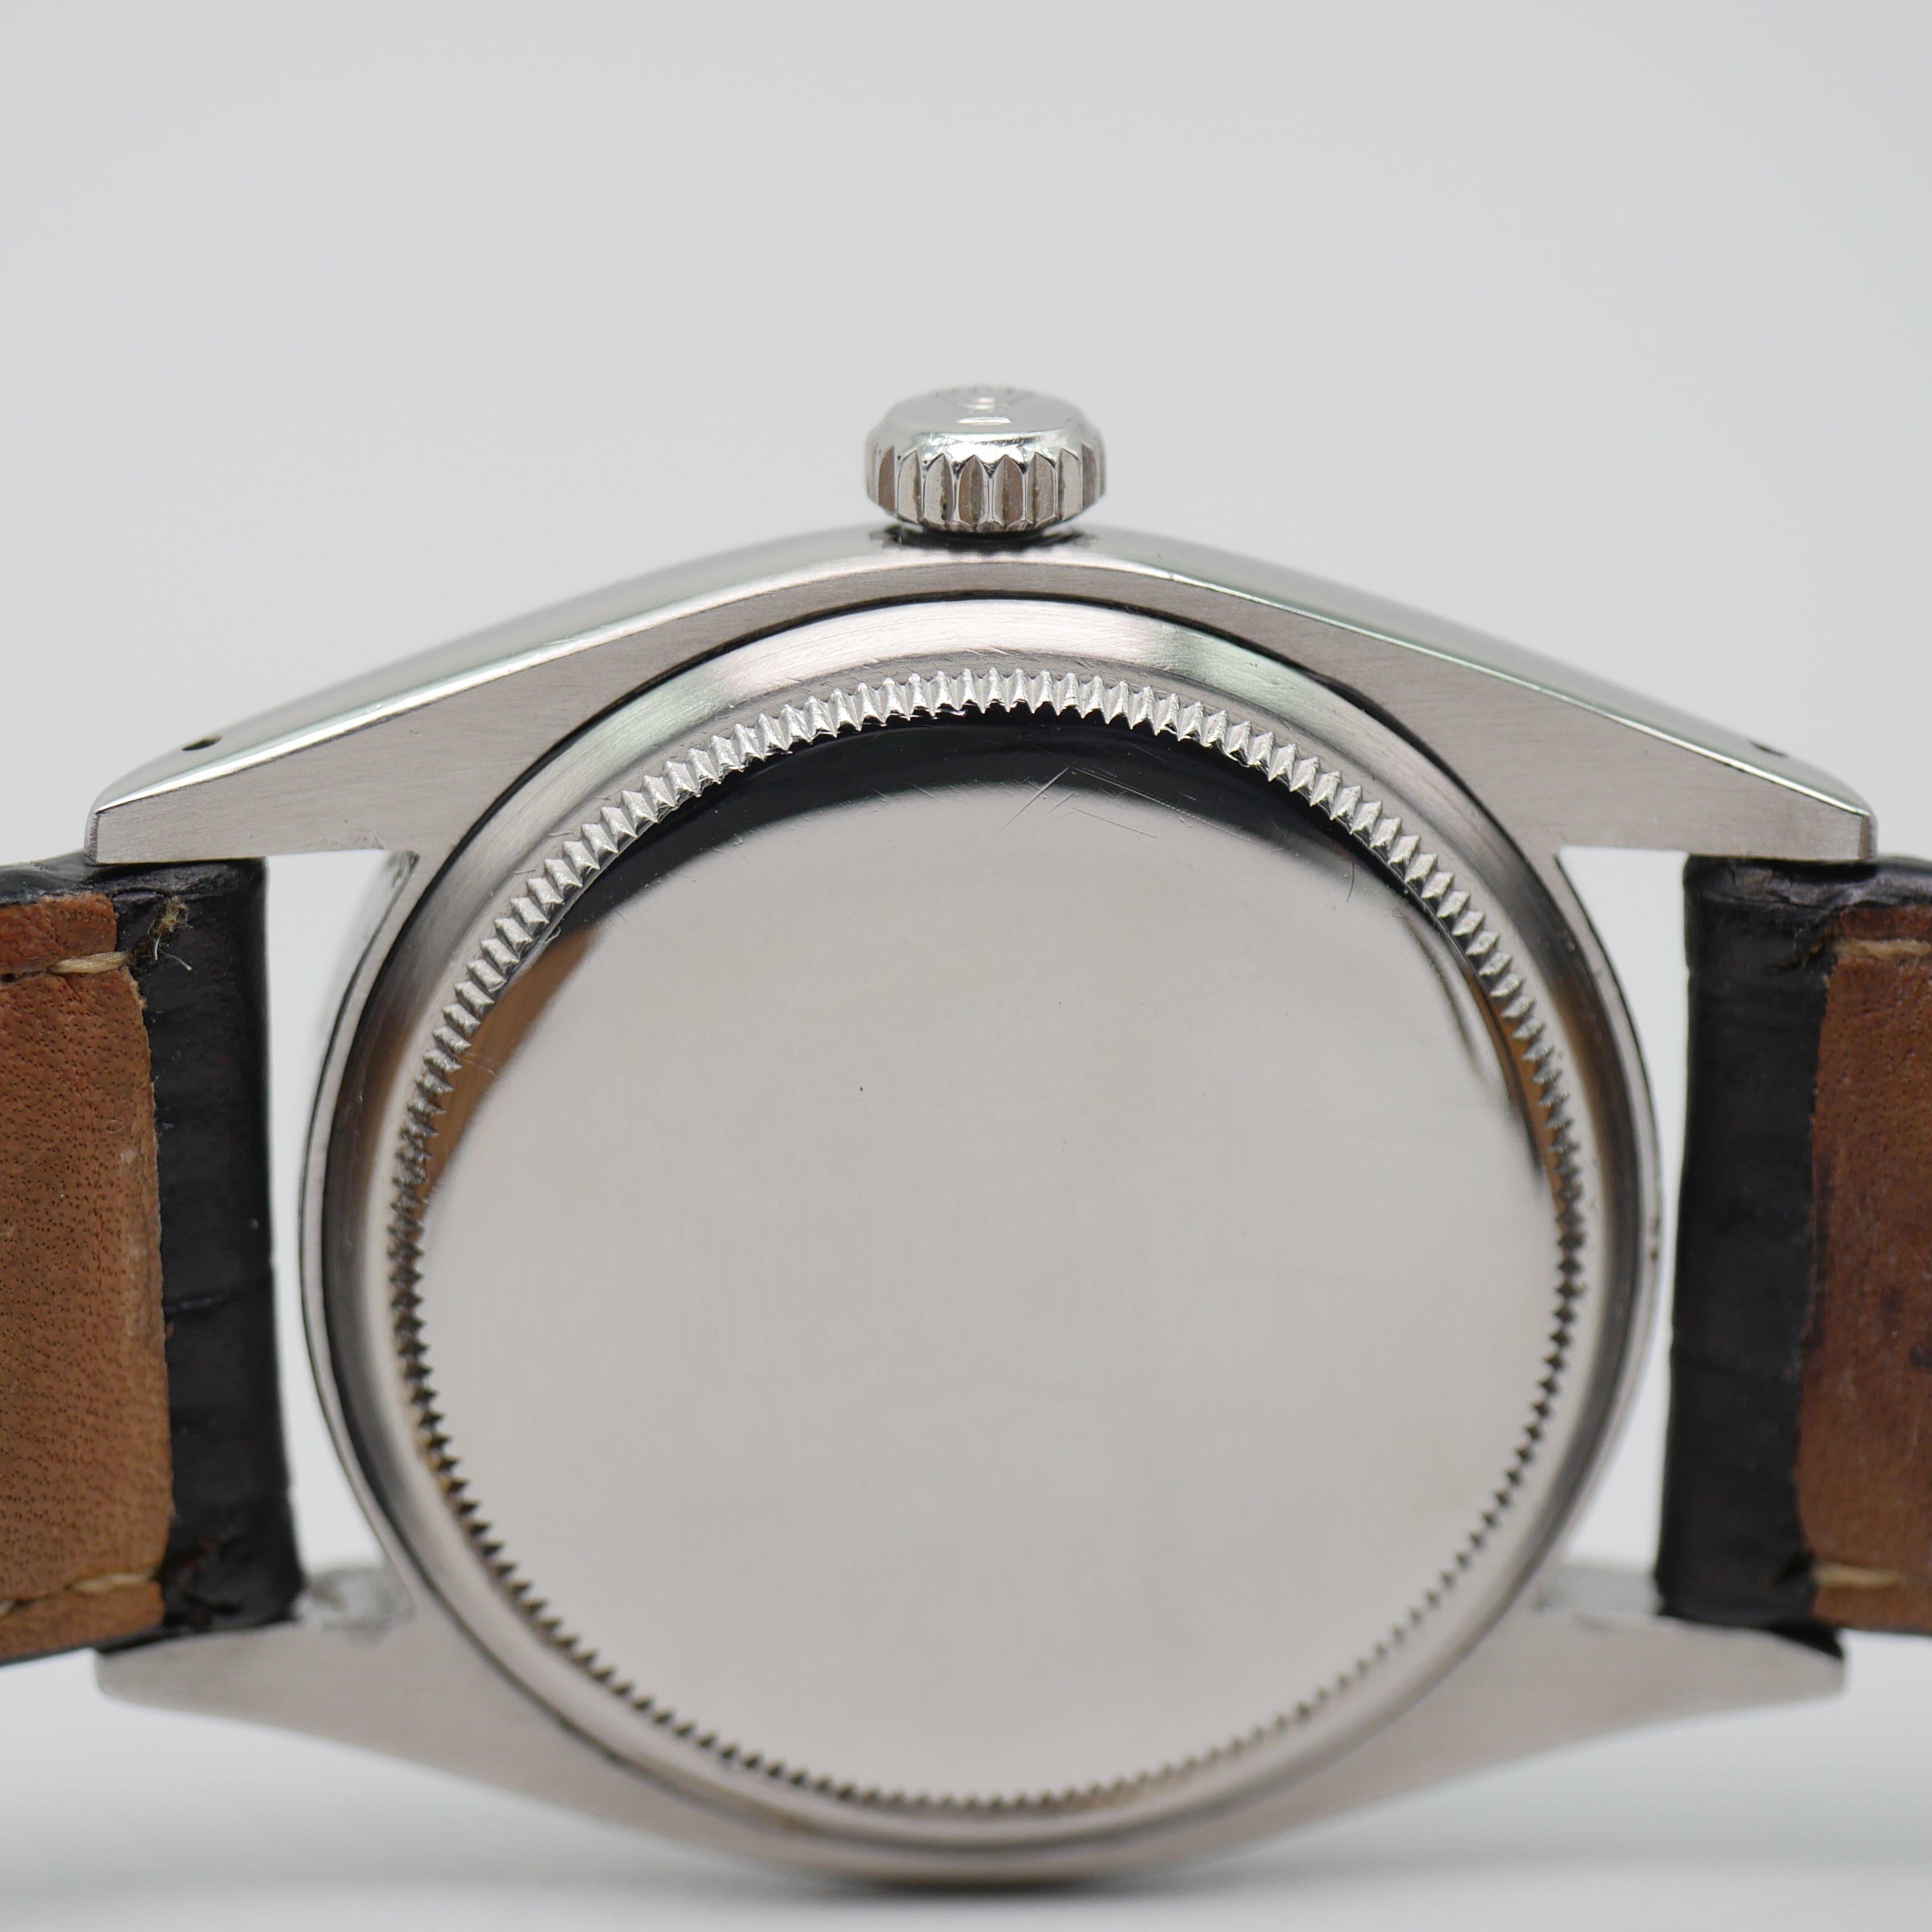 Rolex Vintage Datejust 36mm Stahl